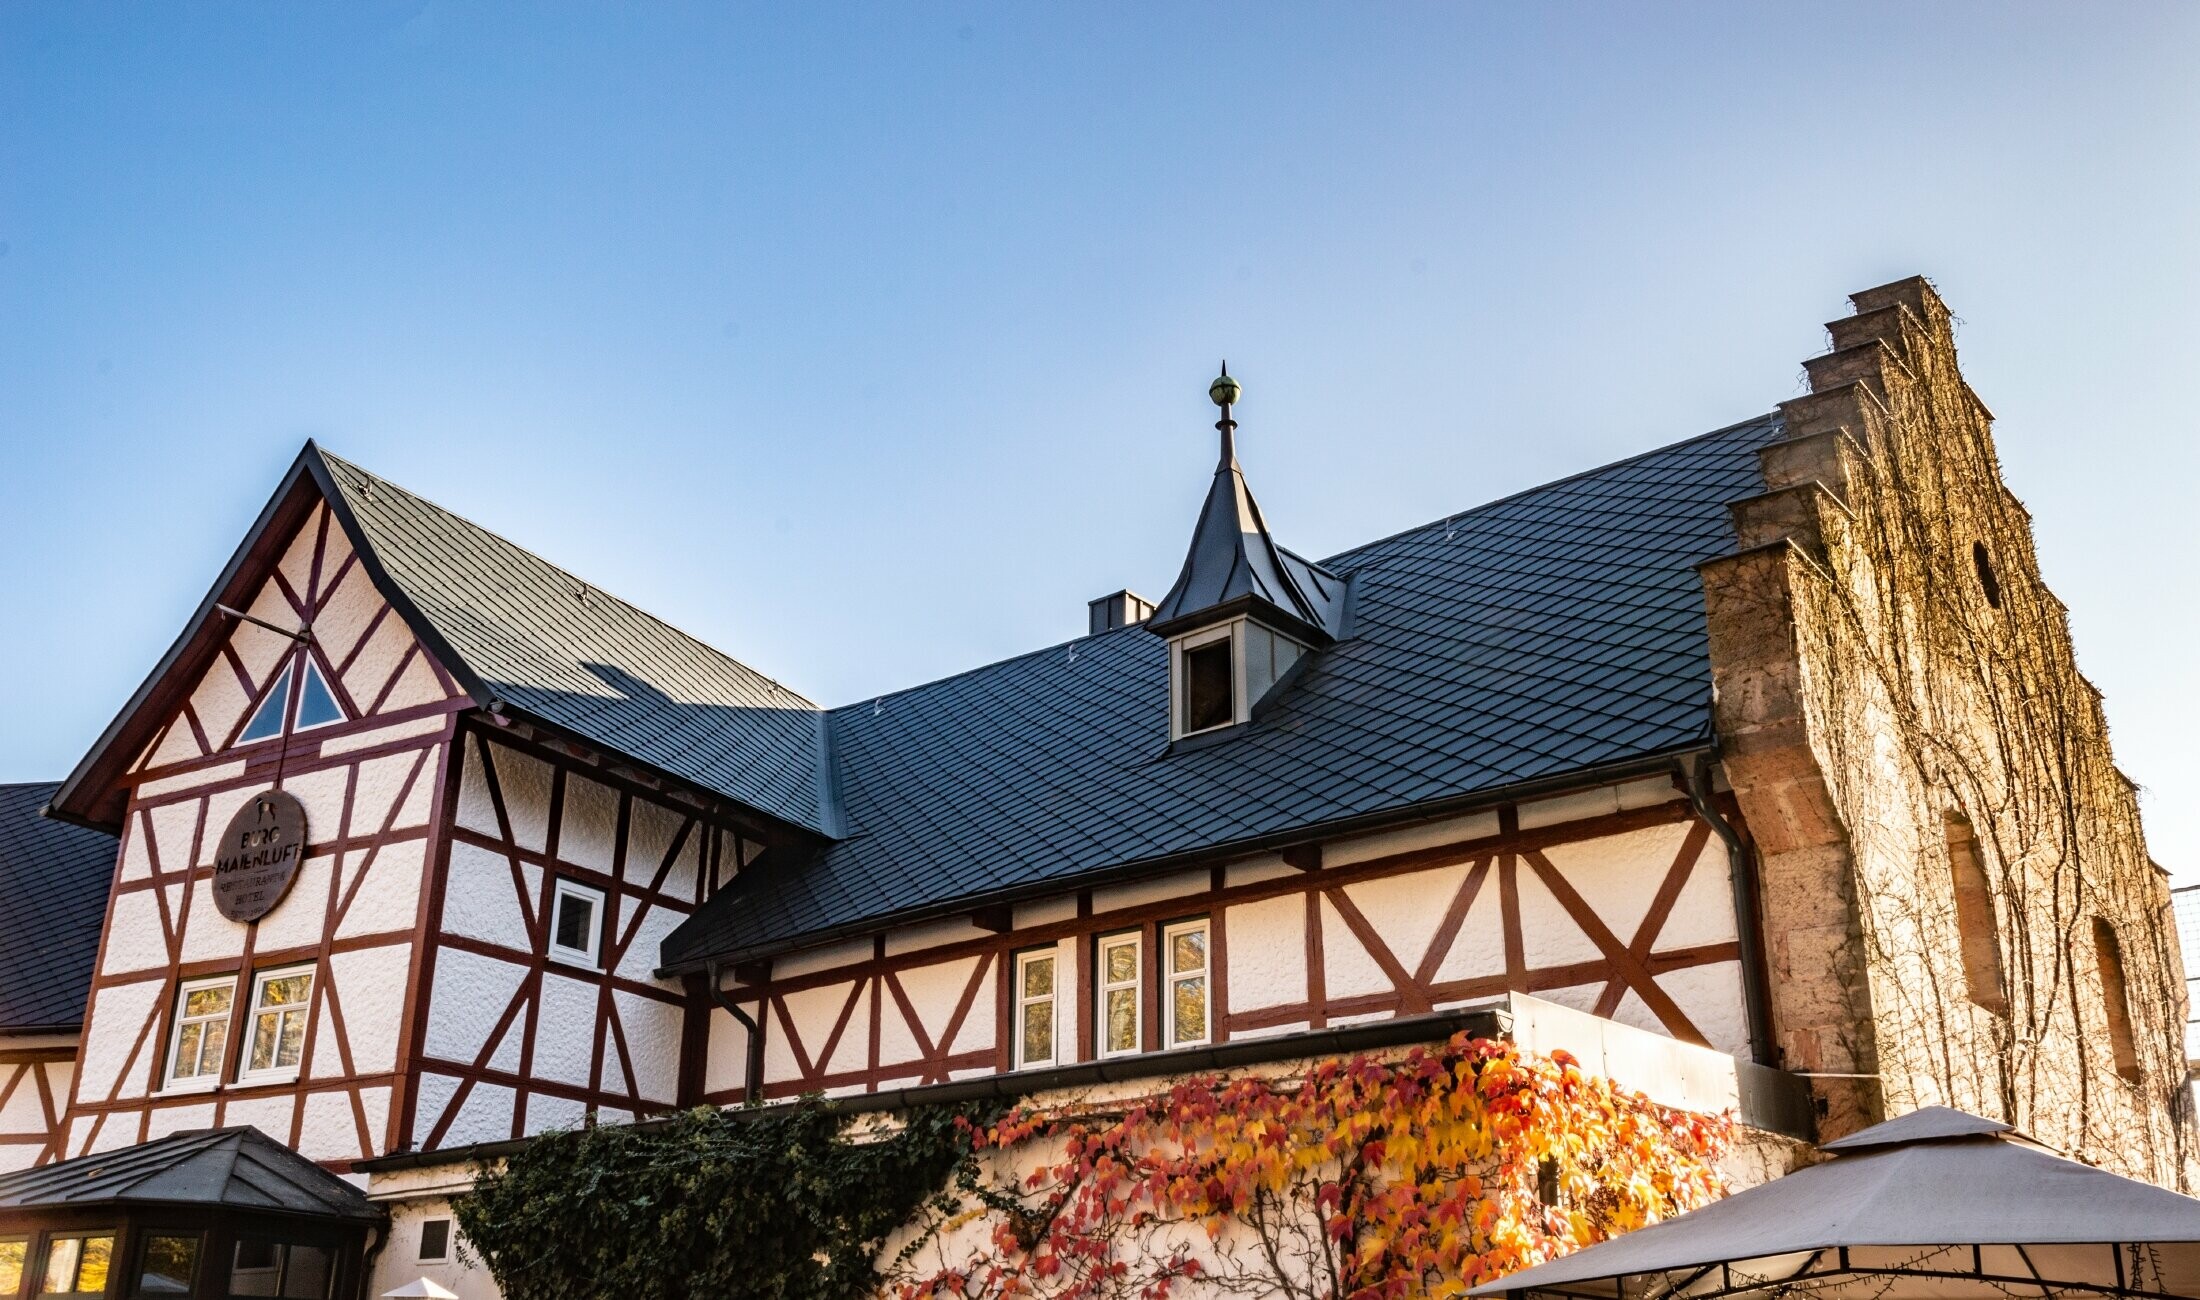 Hotel Burg Maienluft renoverades med PREFA väggromber 29 × 29 i antracitgrått, fasaden är en korsvirkesfasad.